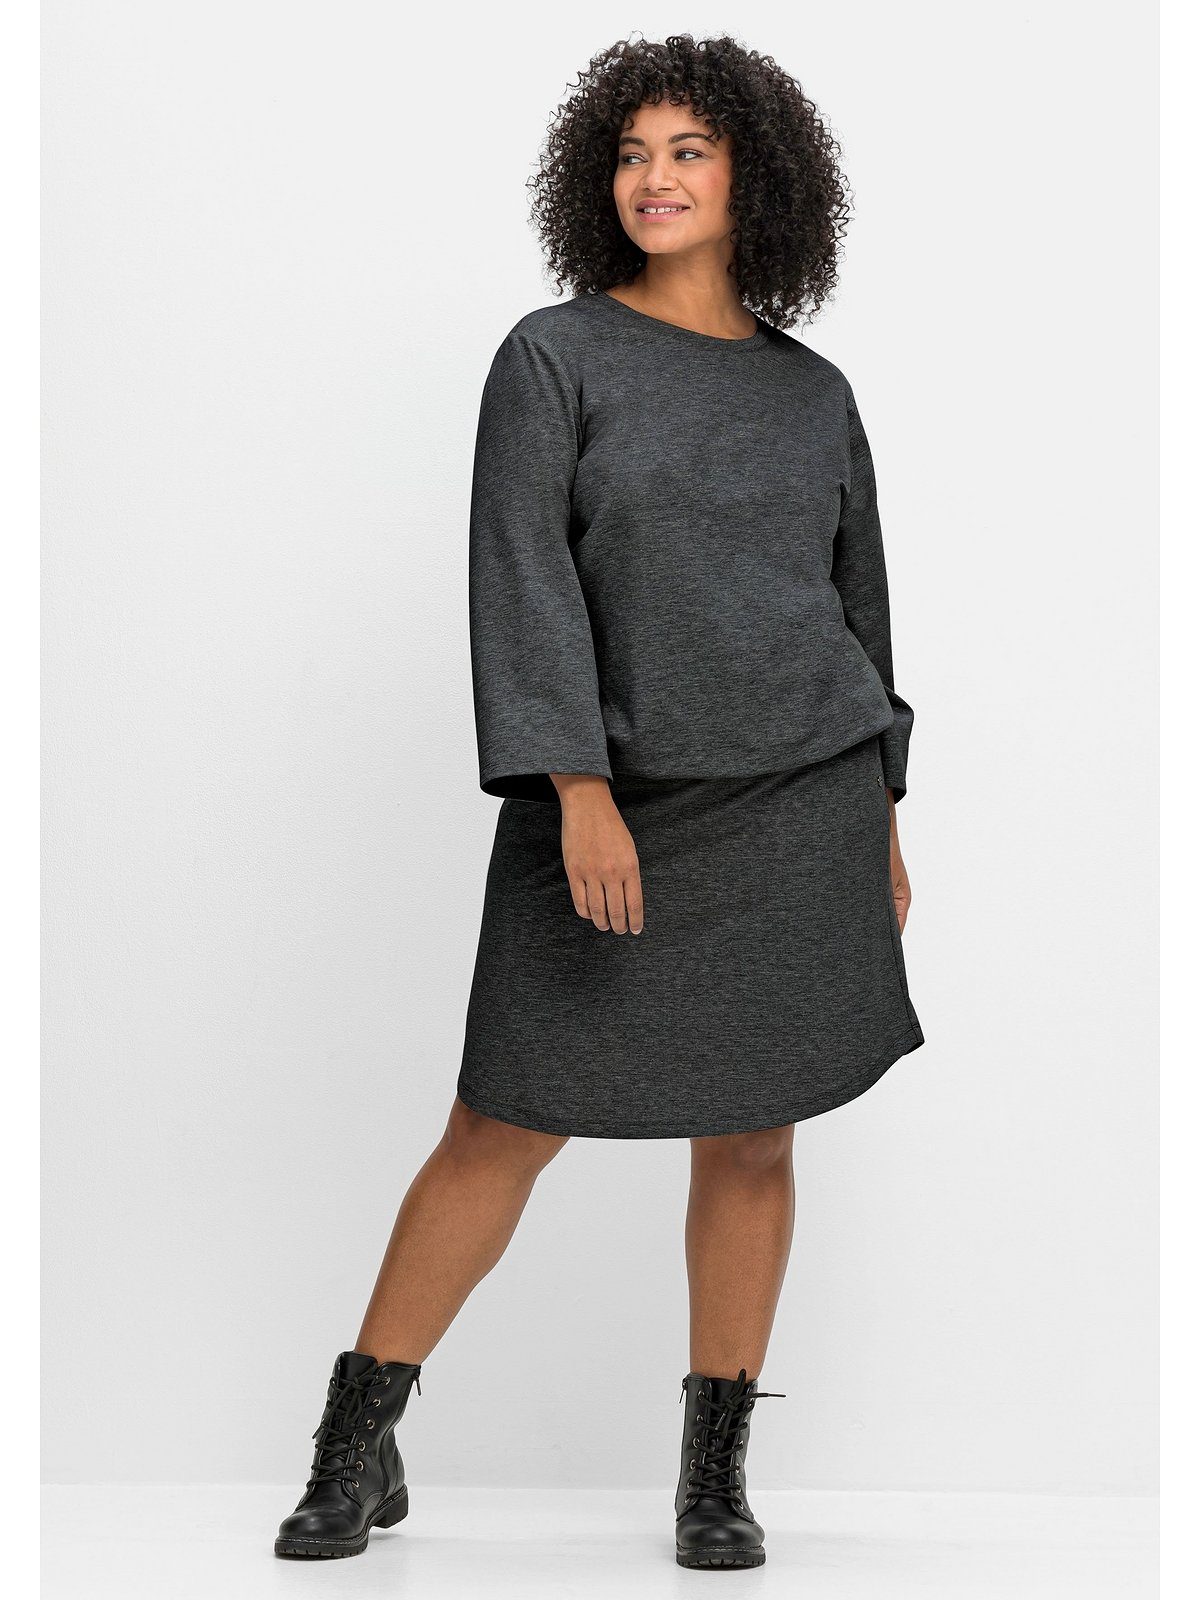 Sheego Jerseyrock Große Größen mit hohem Bund und seitlichen Taschen | Karoröcke